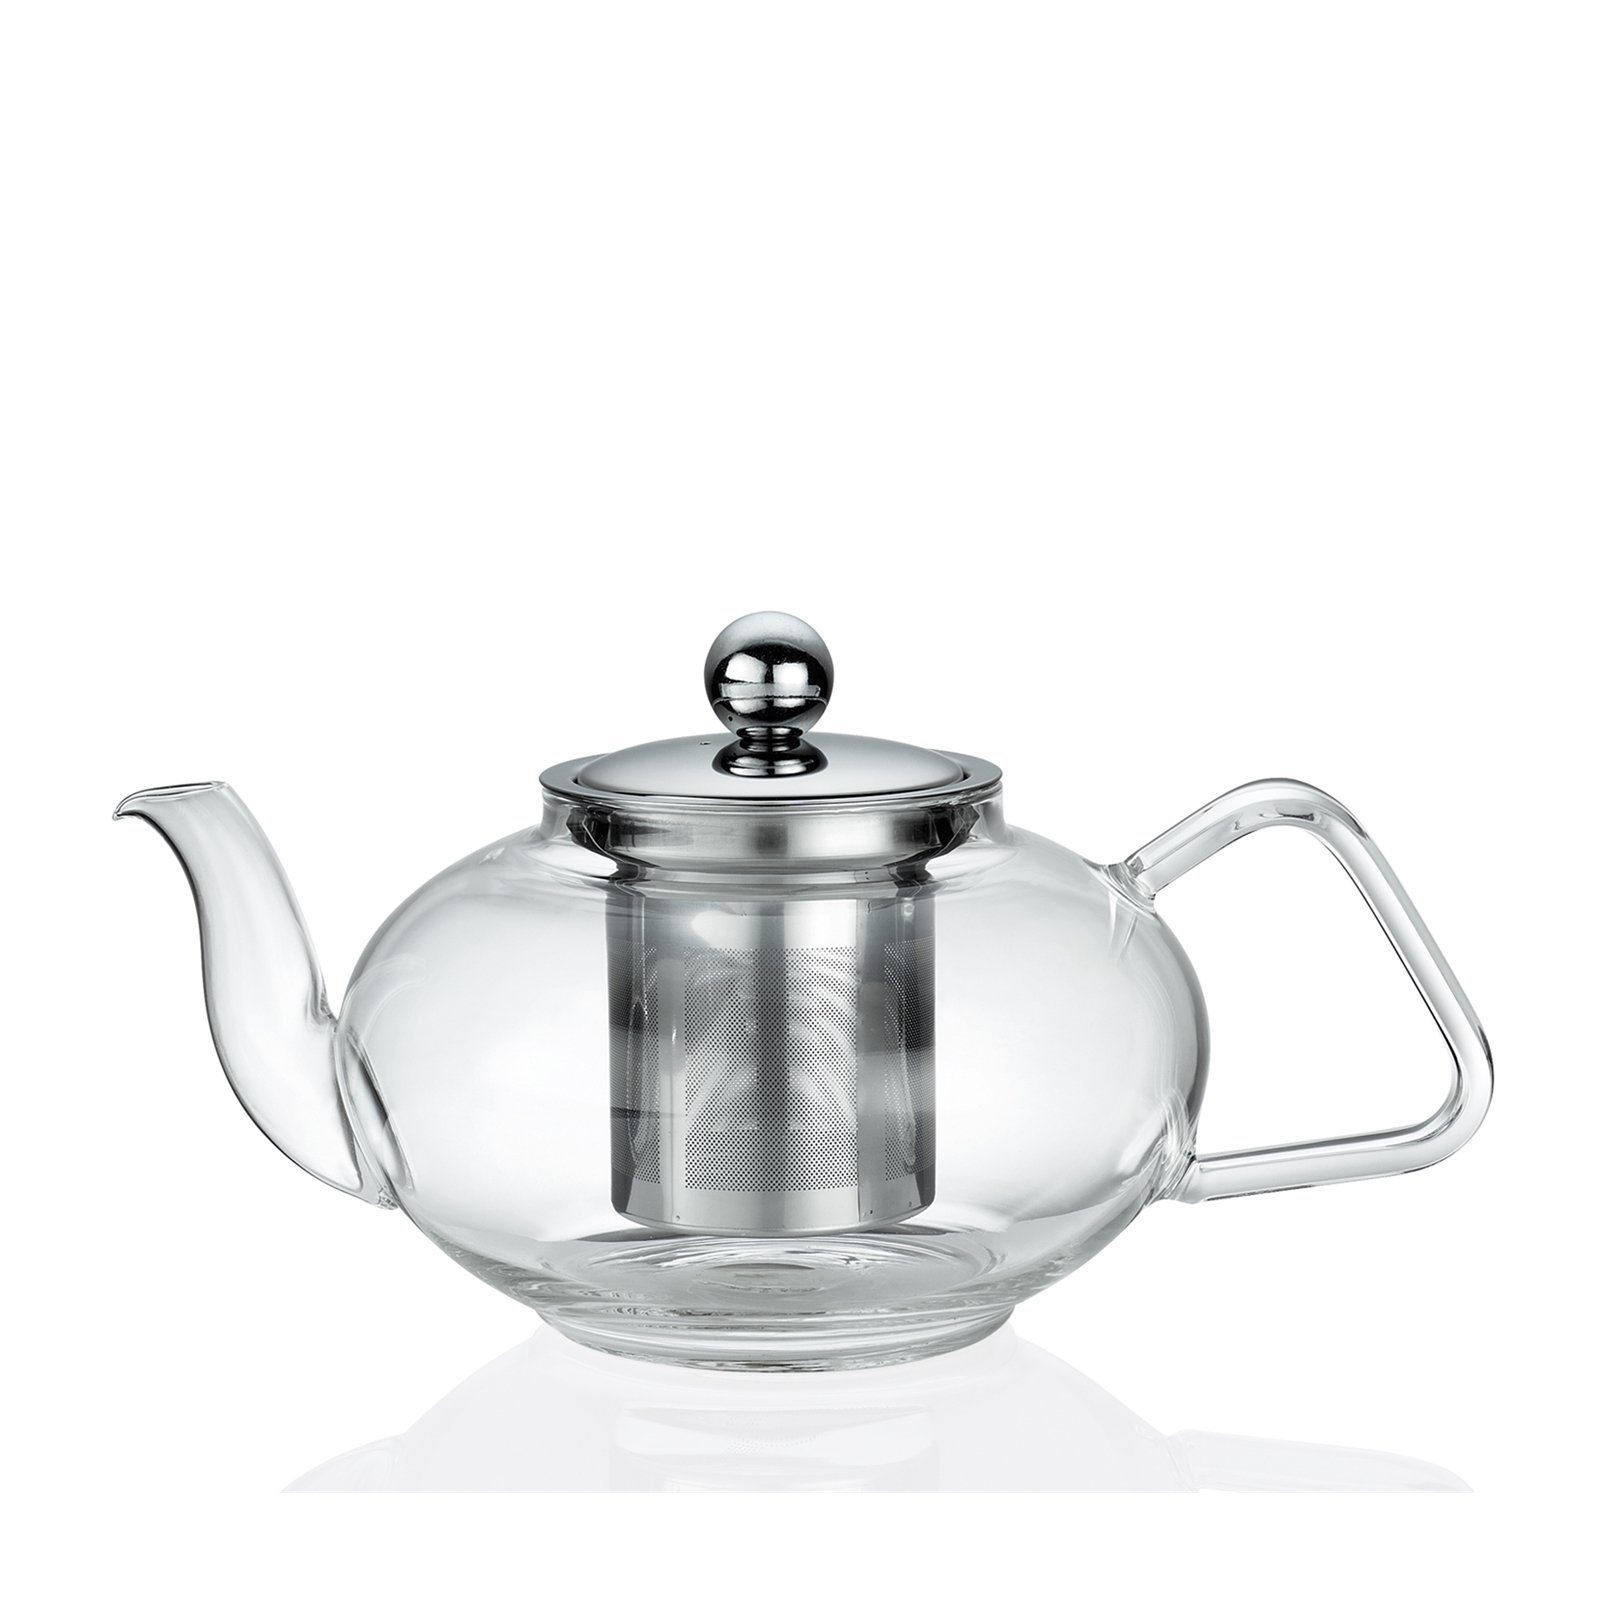 [Favorit] Küchenprofi Teekanne Tibet 0.8 Teekanne Tea, l